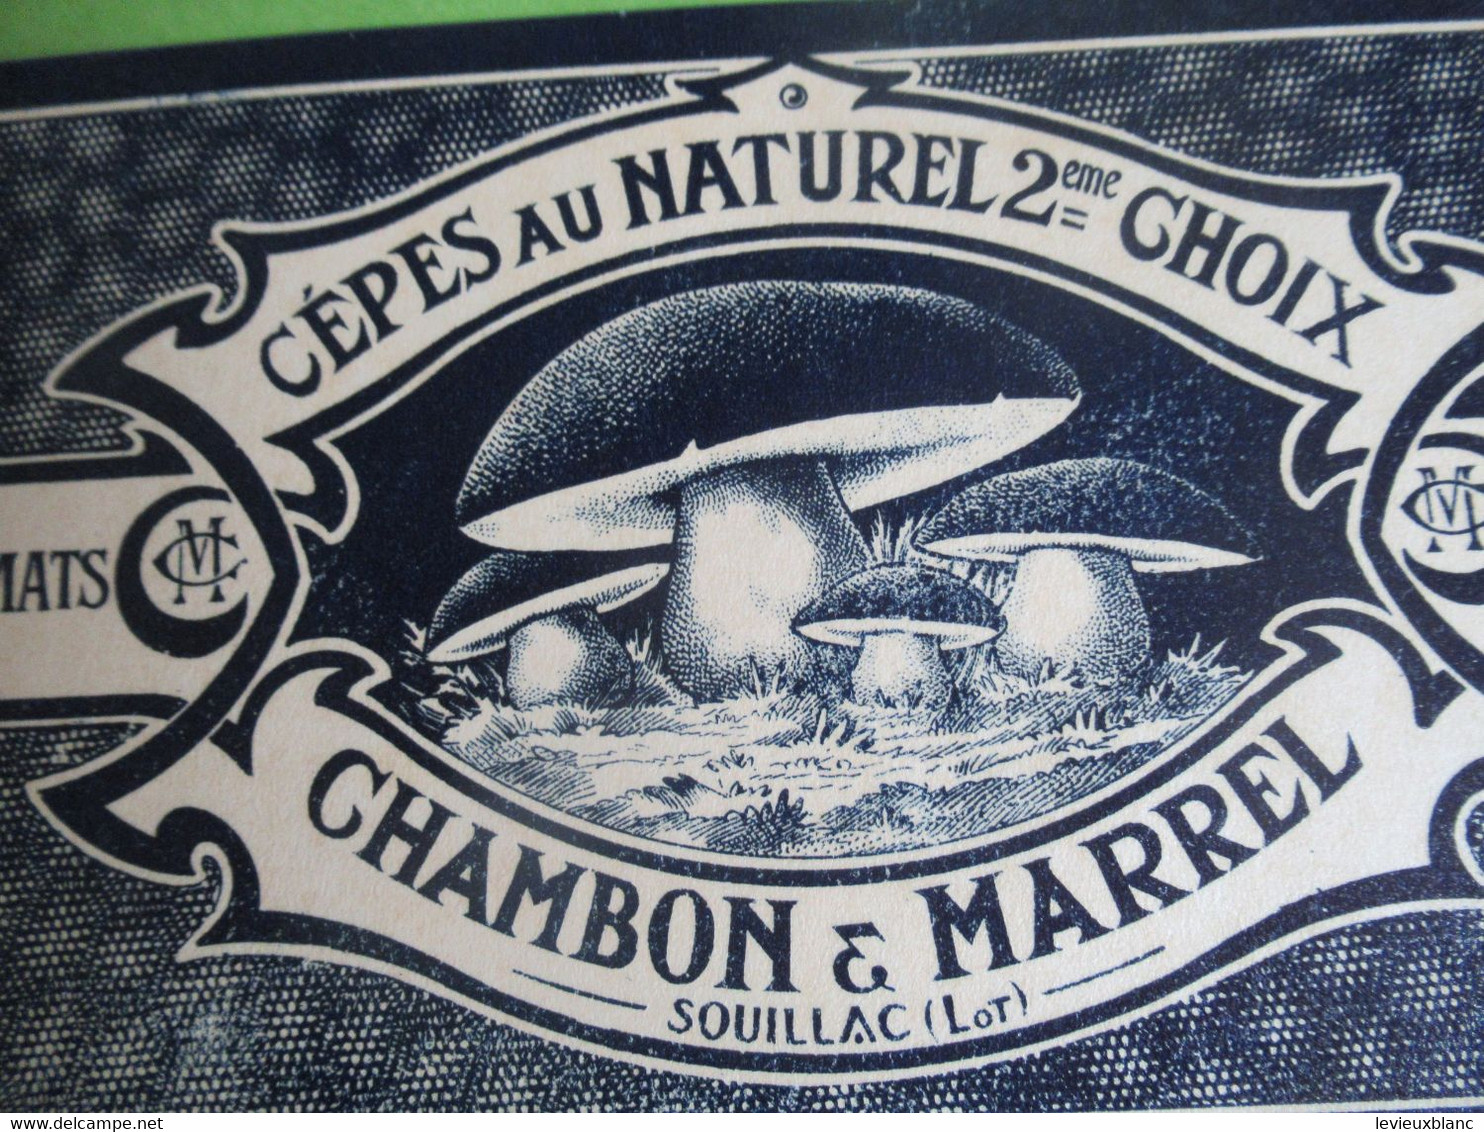 Etiquette Conserve/Cèpes Au Naturel 2éme Choix/CHAMBON & MARREL/SOUILLAC ( Lot ) /début XX                  ETIQ181 - Frutta E Verdura